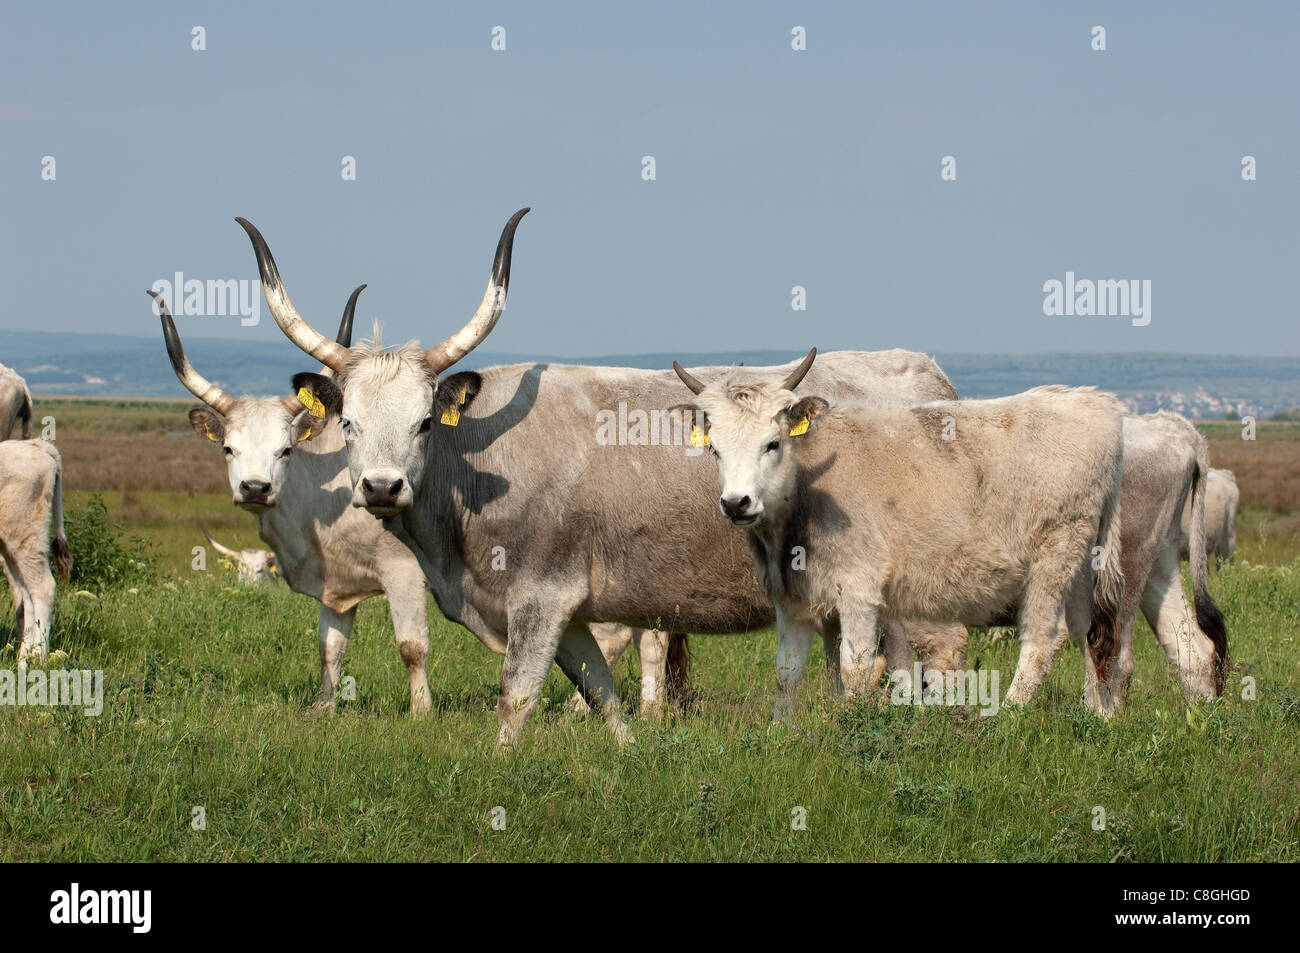 Le bétail domestique, race : Steppe hongroise (Bos primigenius, Bos taurus). Plusieurs individus d'âge différent Banque D'Images